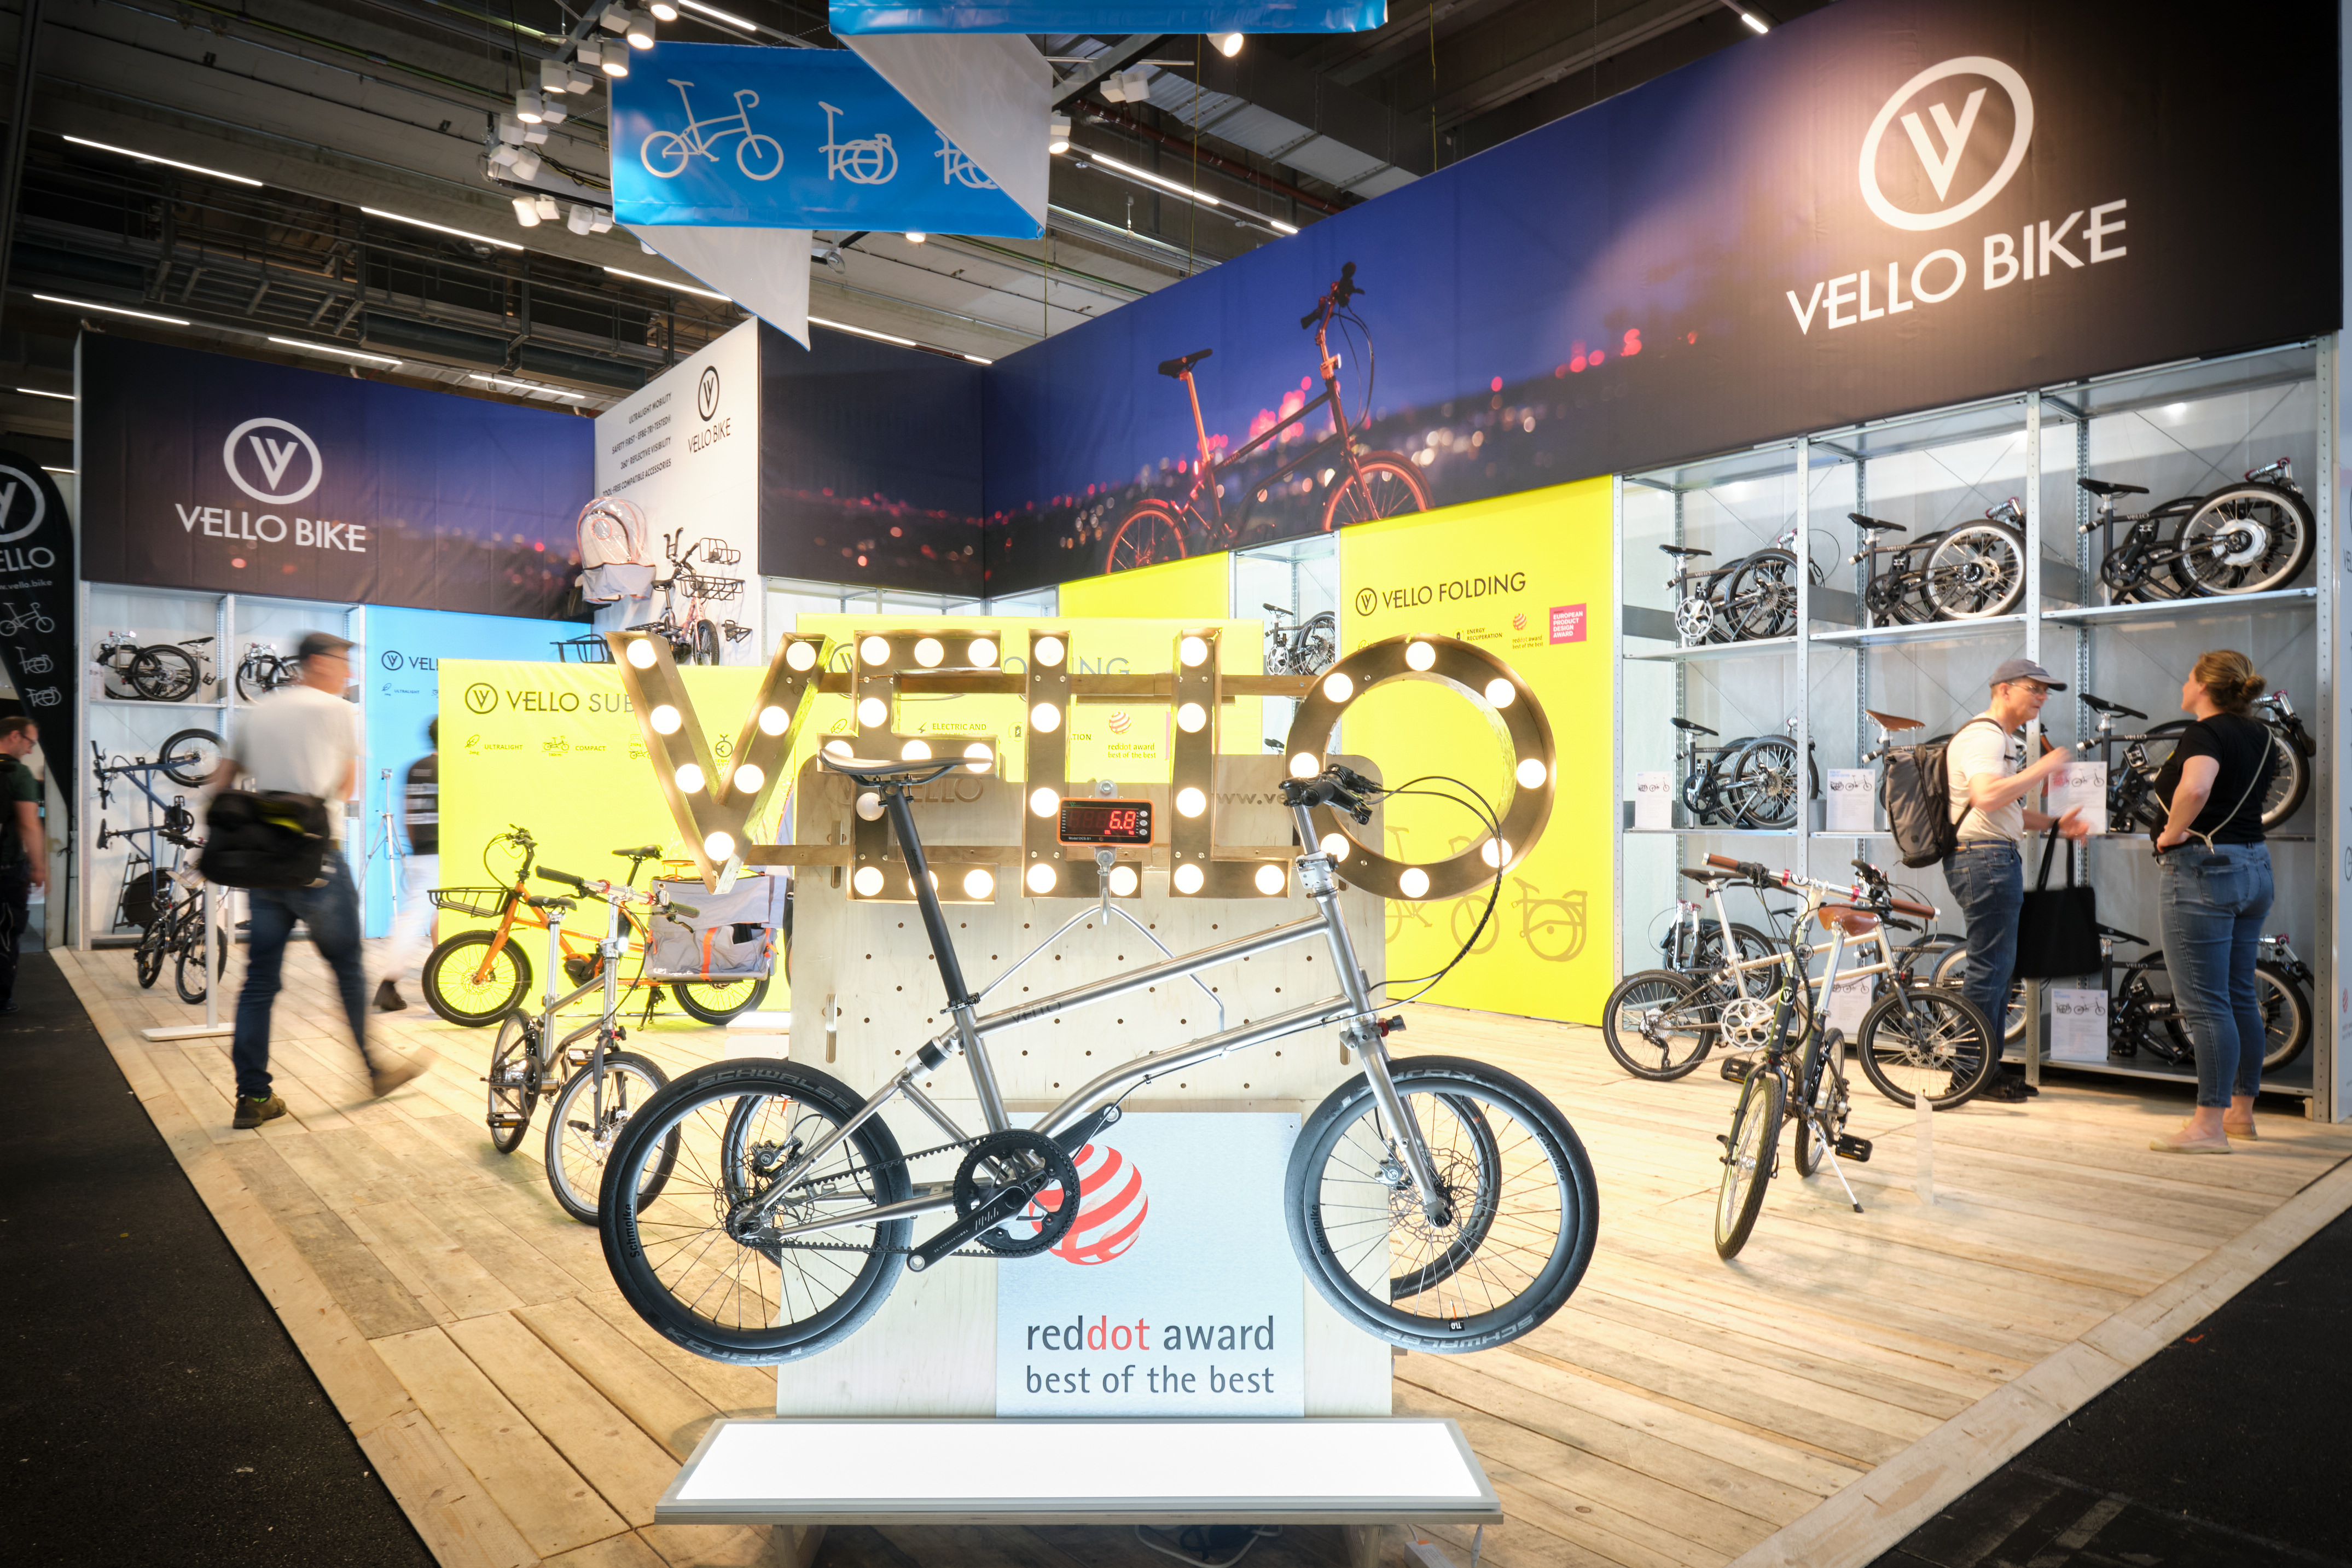 Halle 12.0, Vello Bike: Vello Bike, Gewinner des reddot award "best of the best", präsentiert sein ultraleichtes Klapprad.